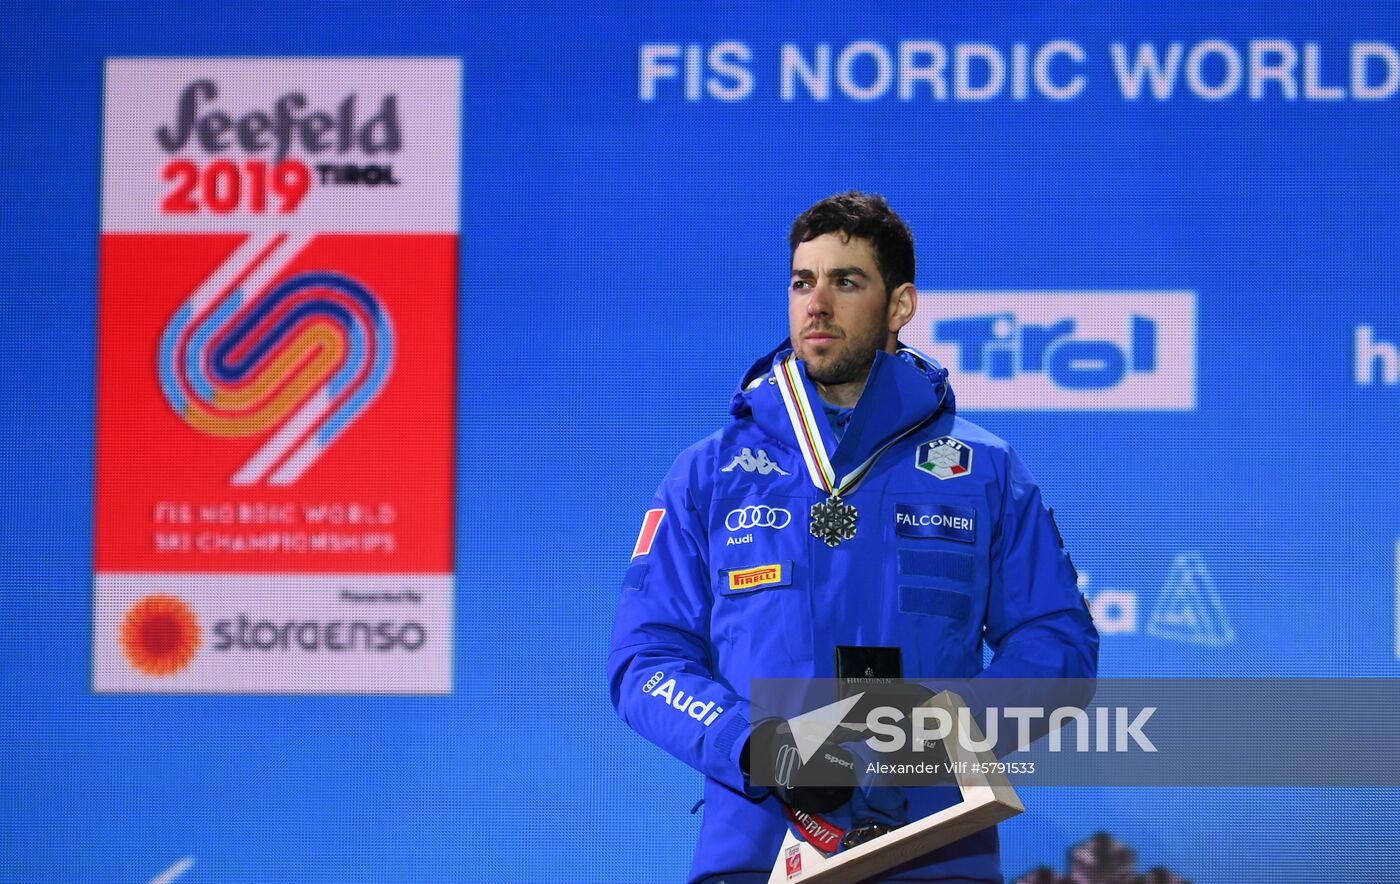 Austria Ski World Championships Sprint Medals